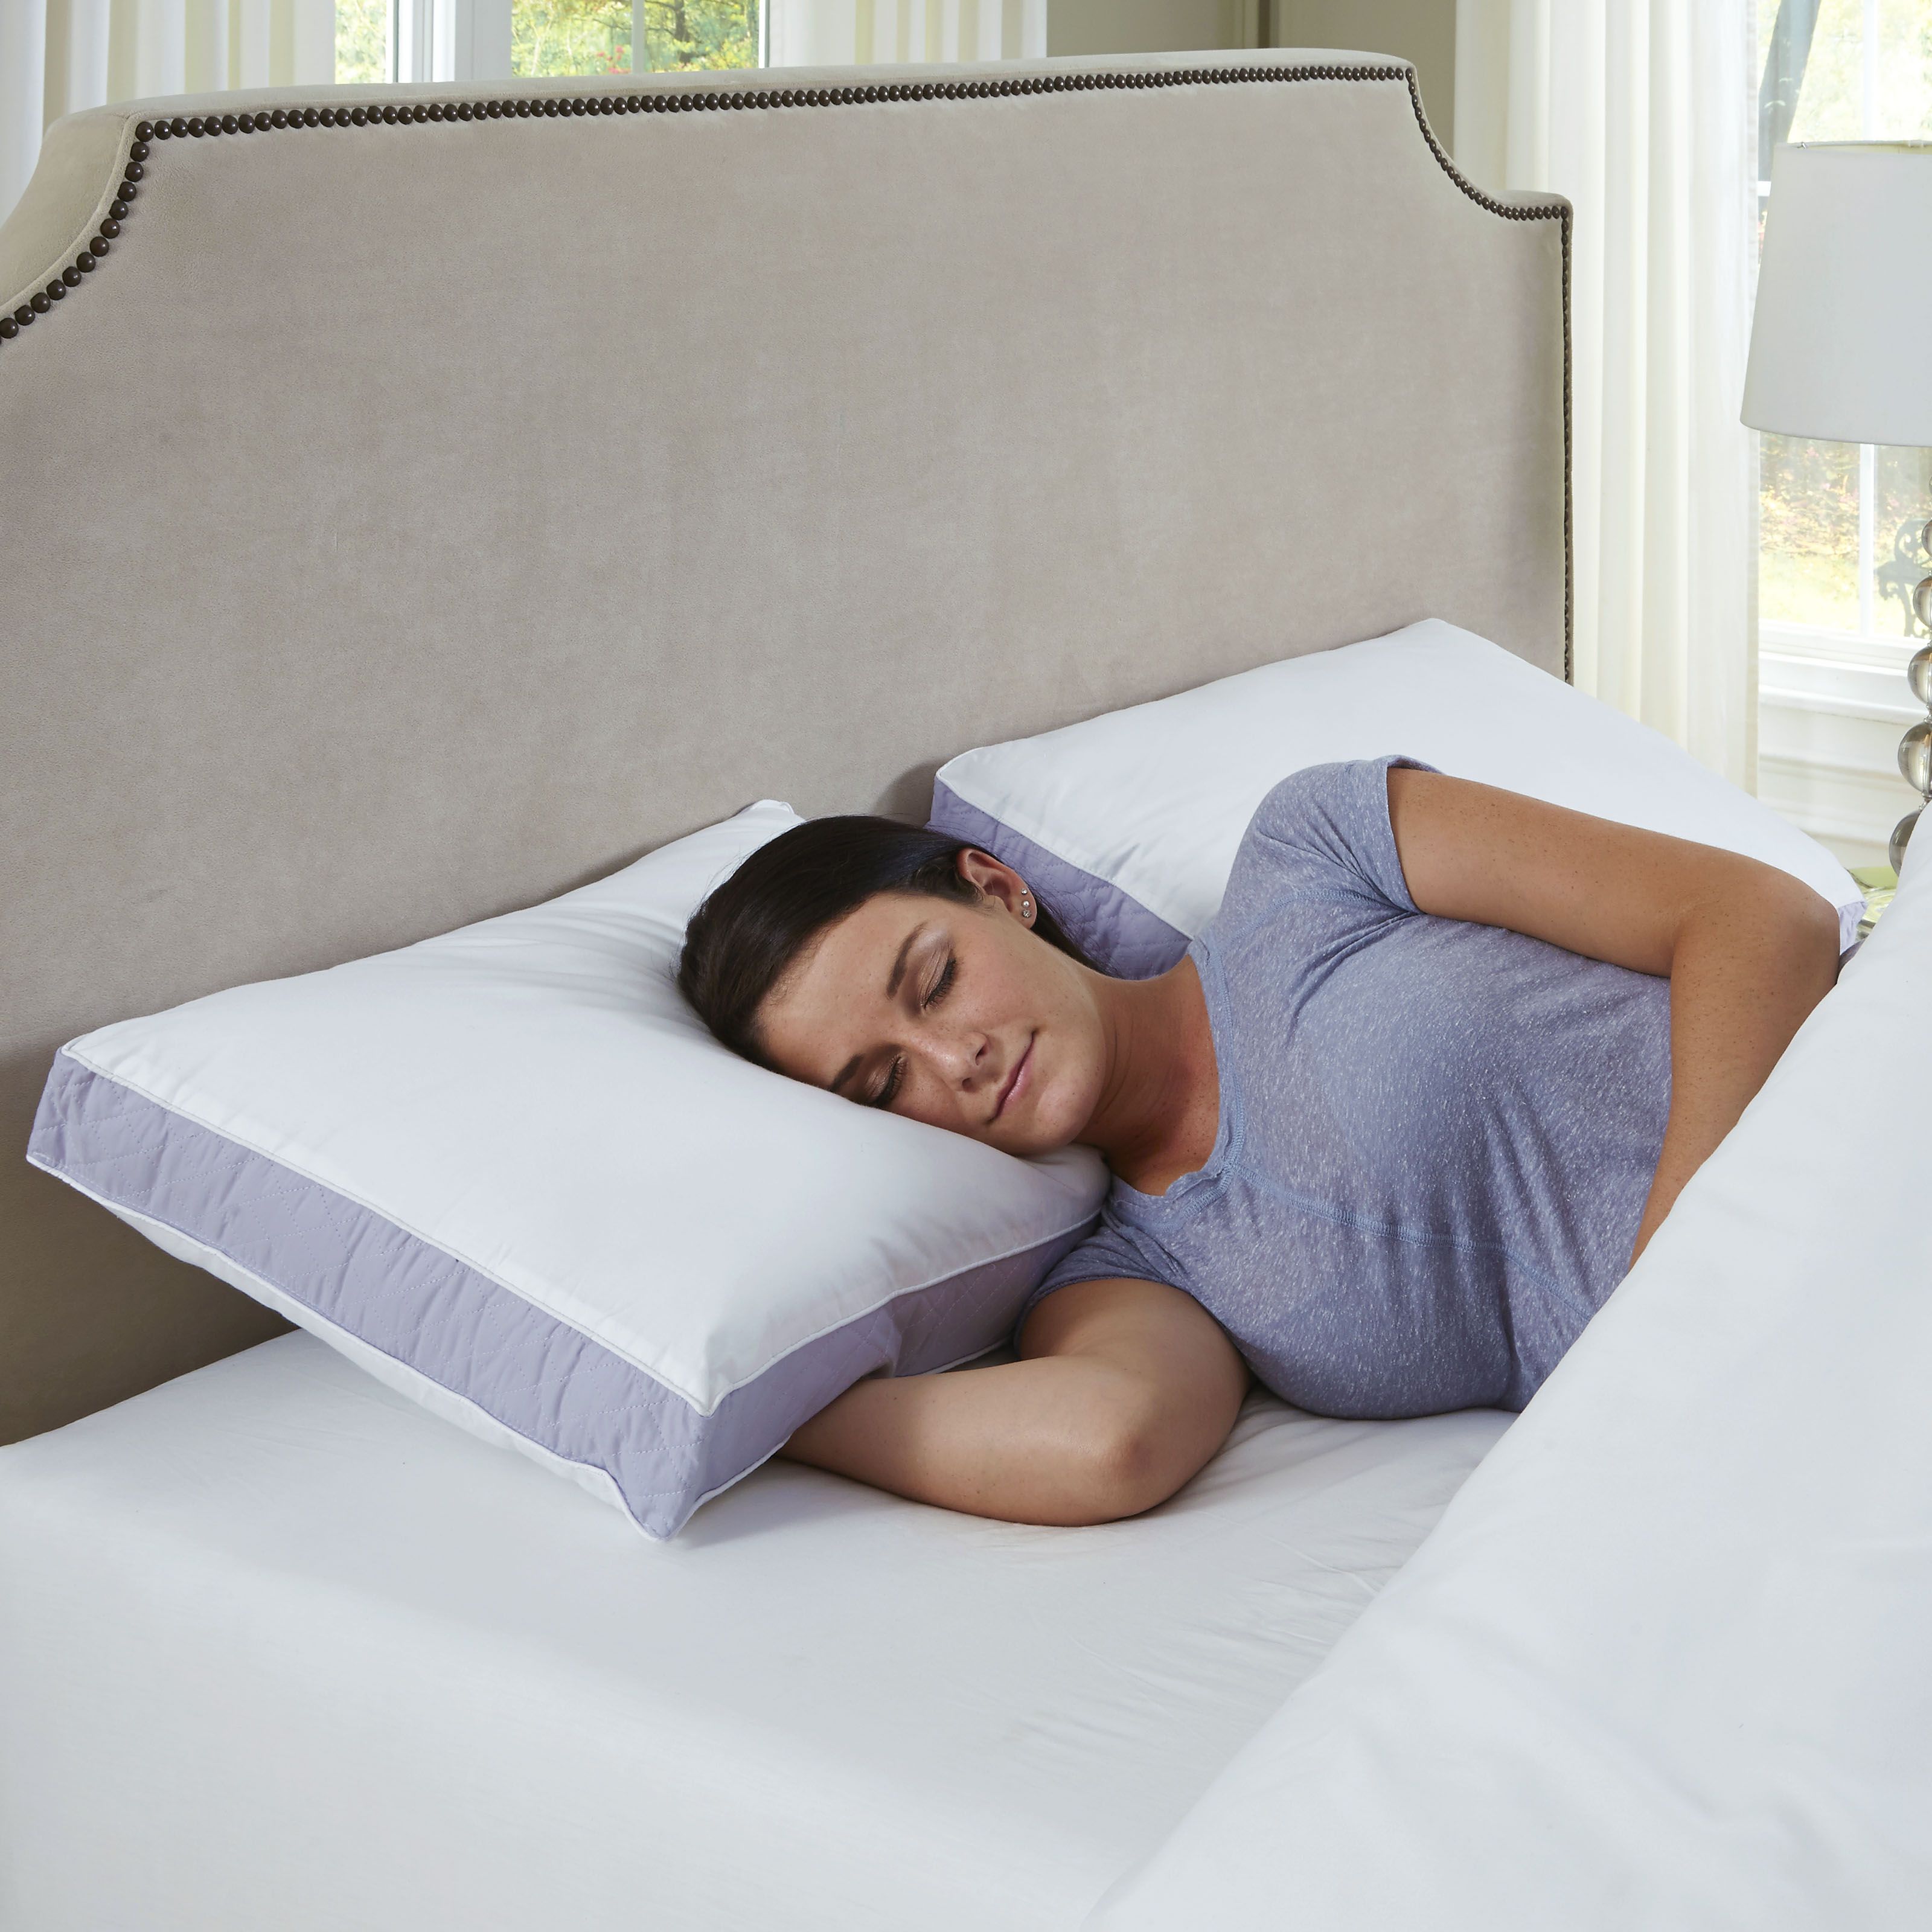 Fingerhut - Density Extra Firm Pillows 2-Pack - Queen